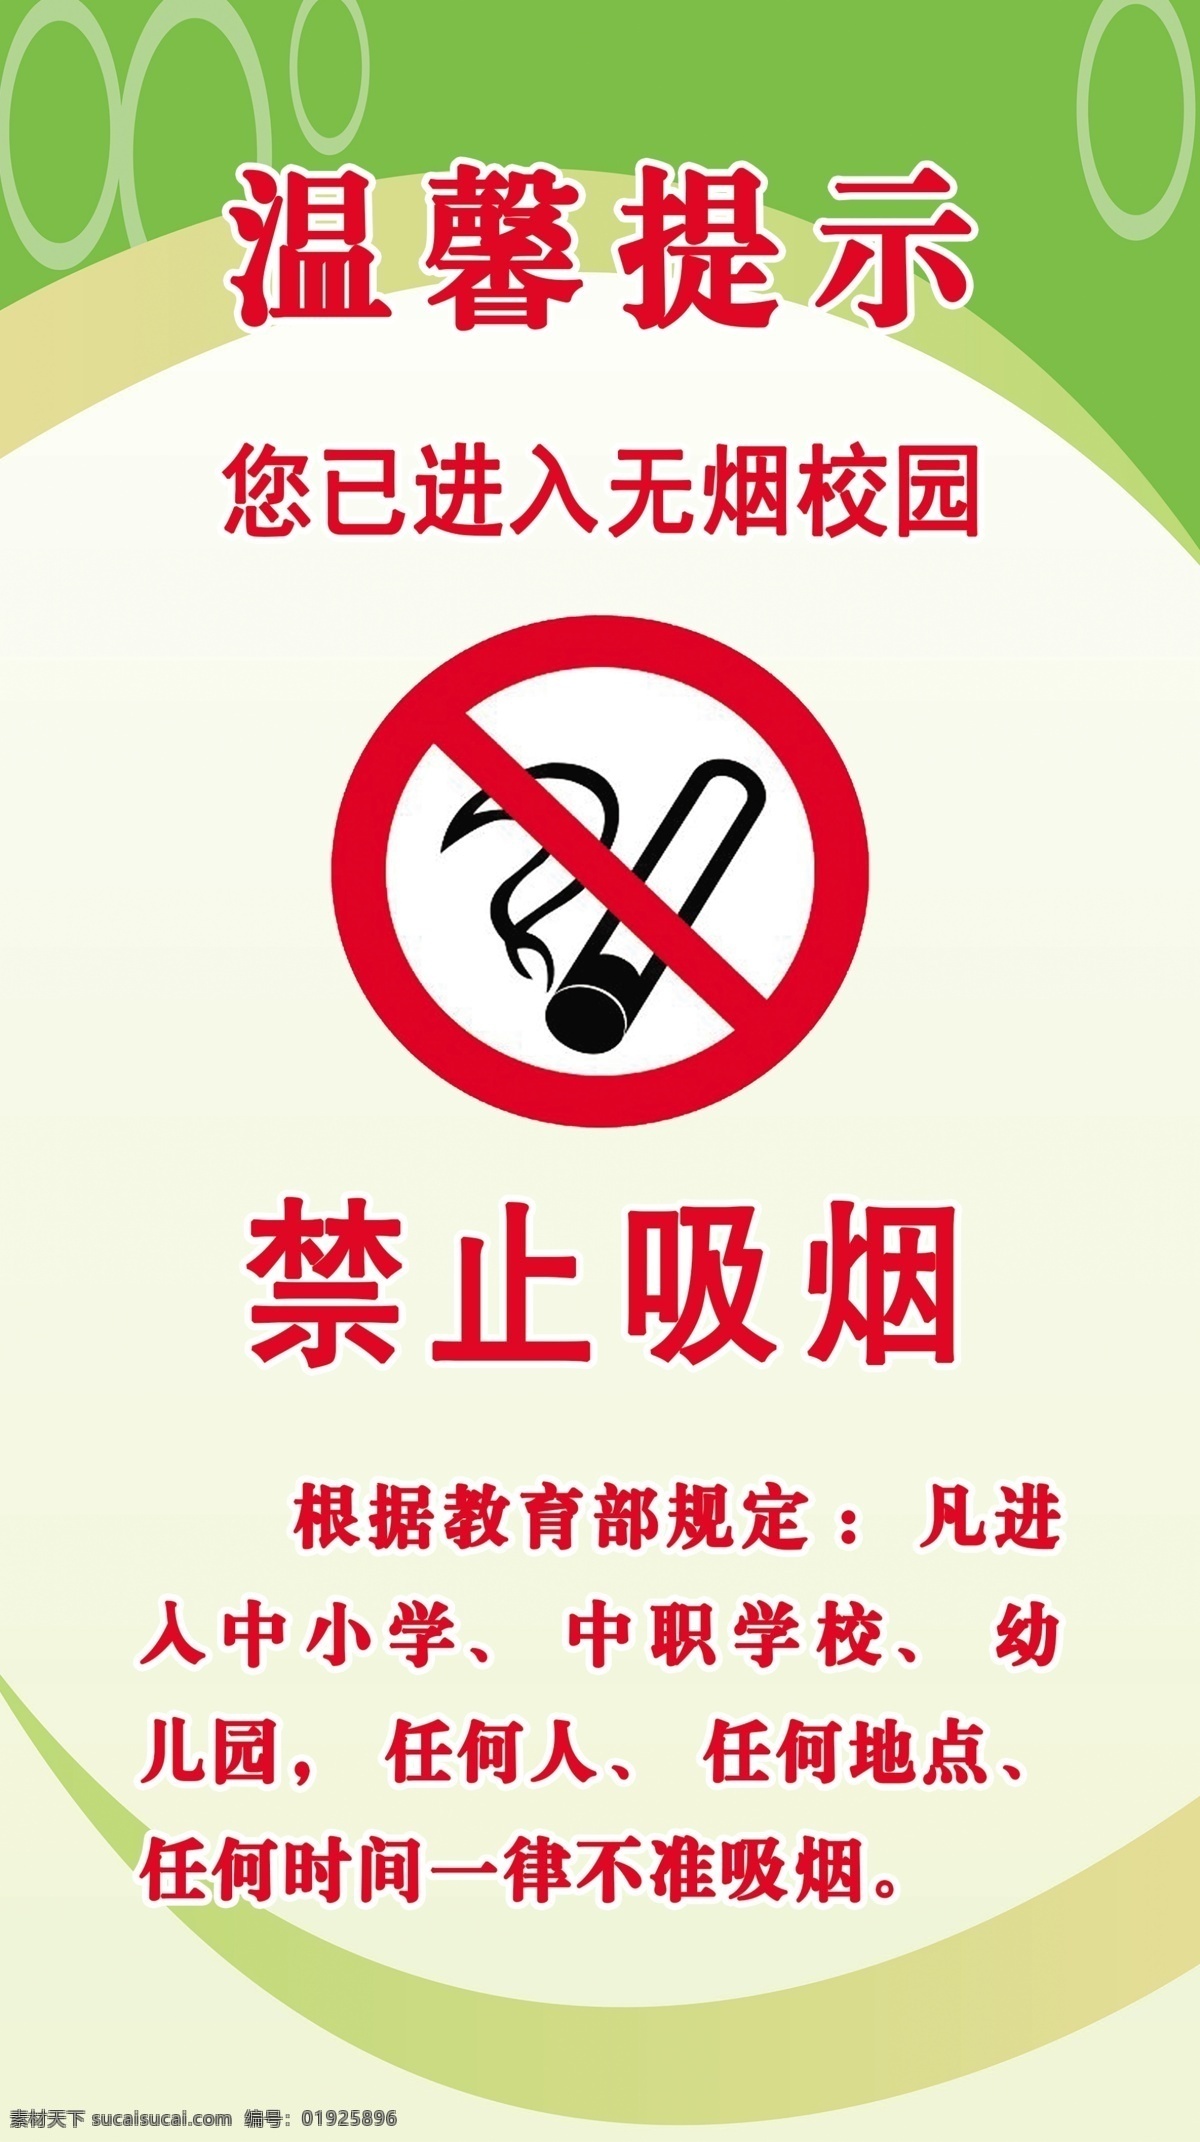 温馨提示 无烟校园 禁烟标志 禁止吸烟 学校 校园 严禁吸烟 中小学 中职学校